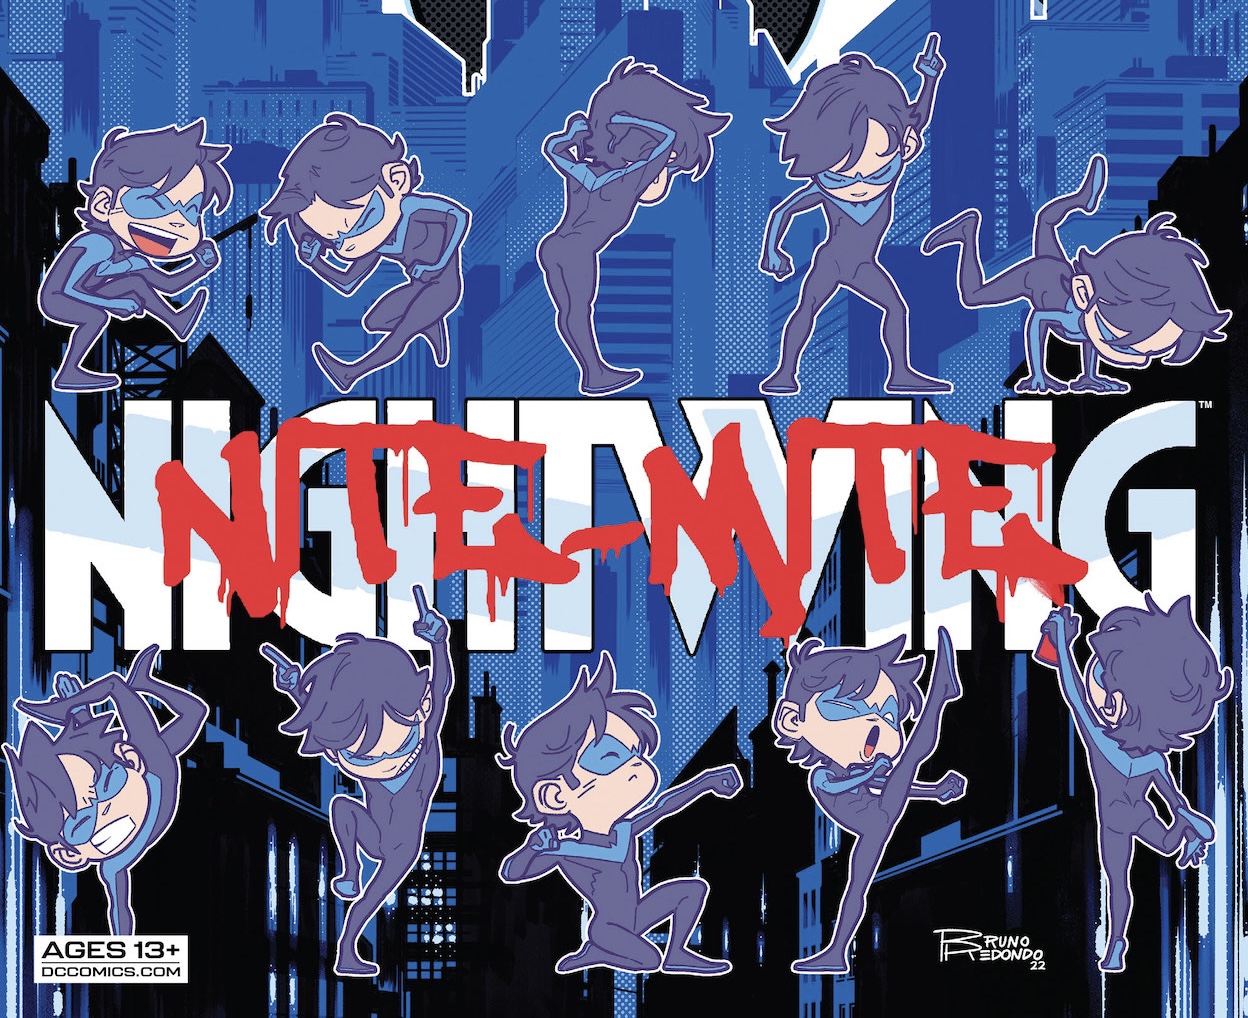 'Nightwing' #98 Mite make you smile